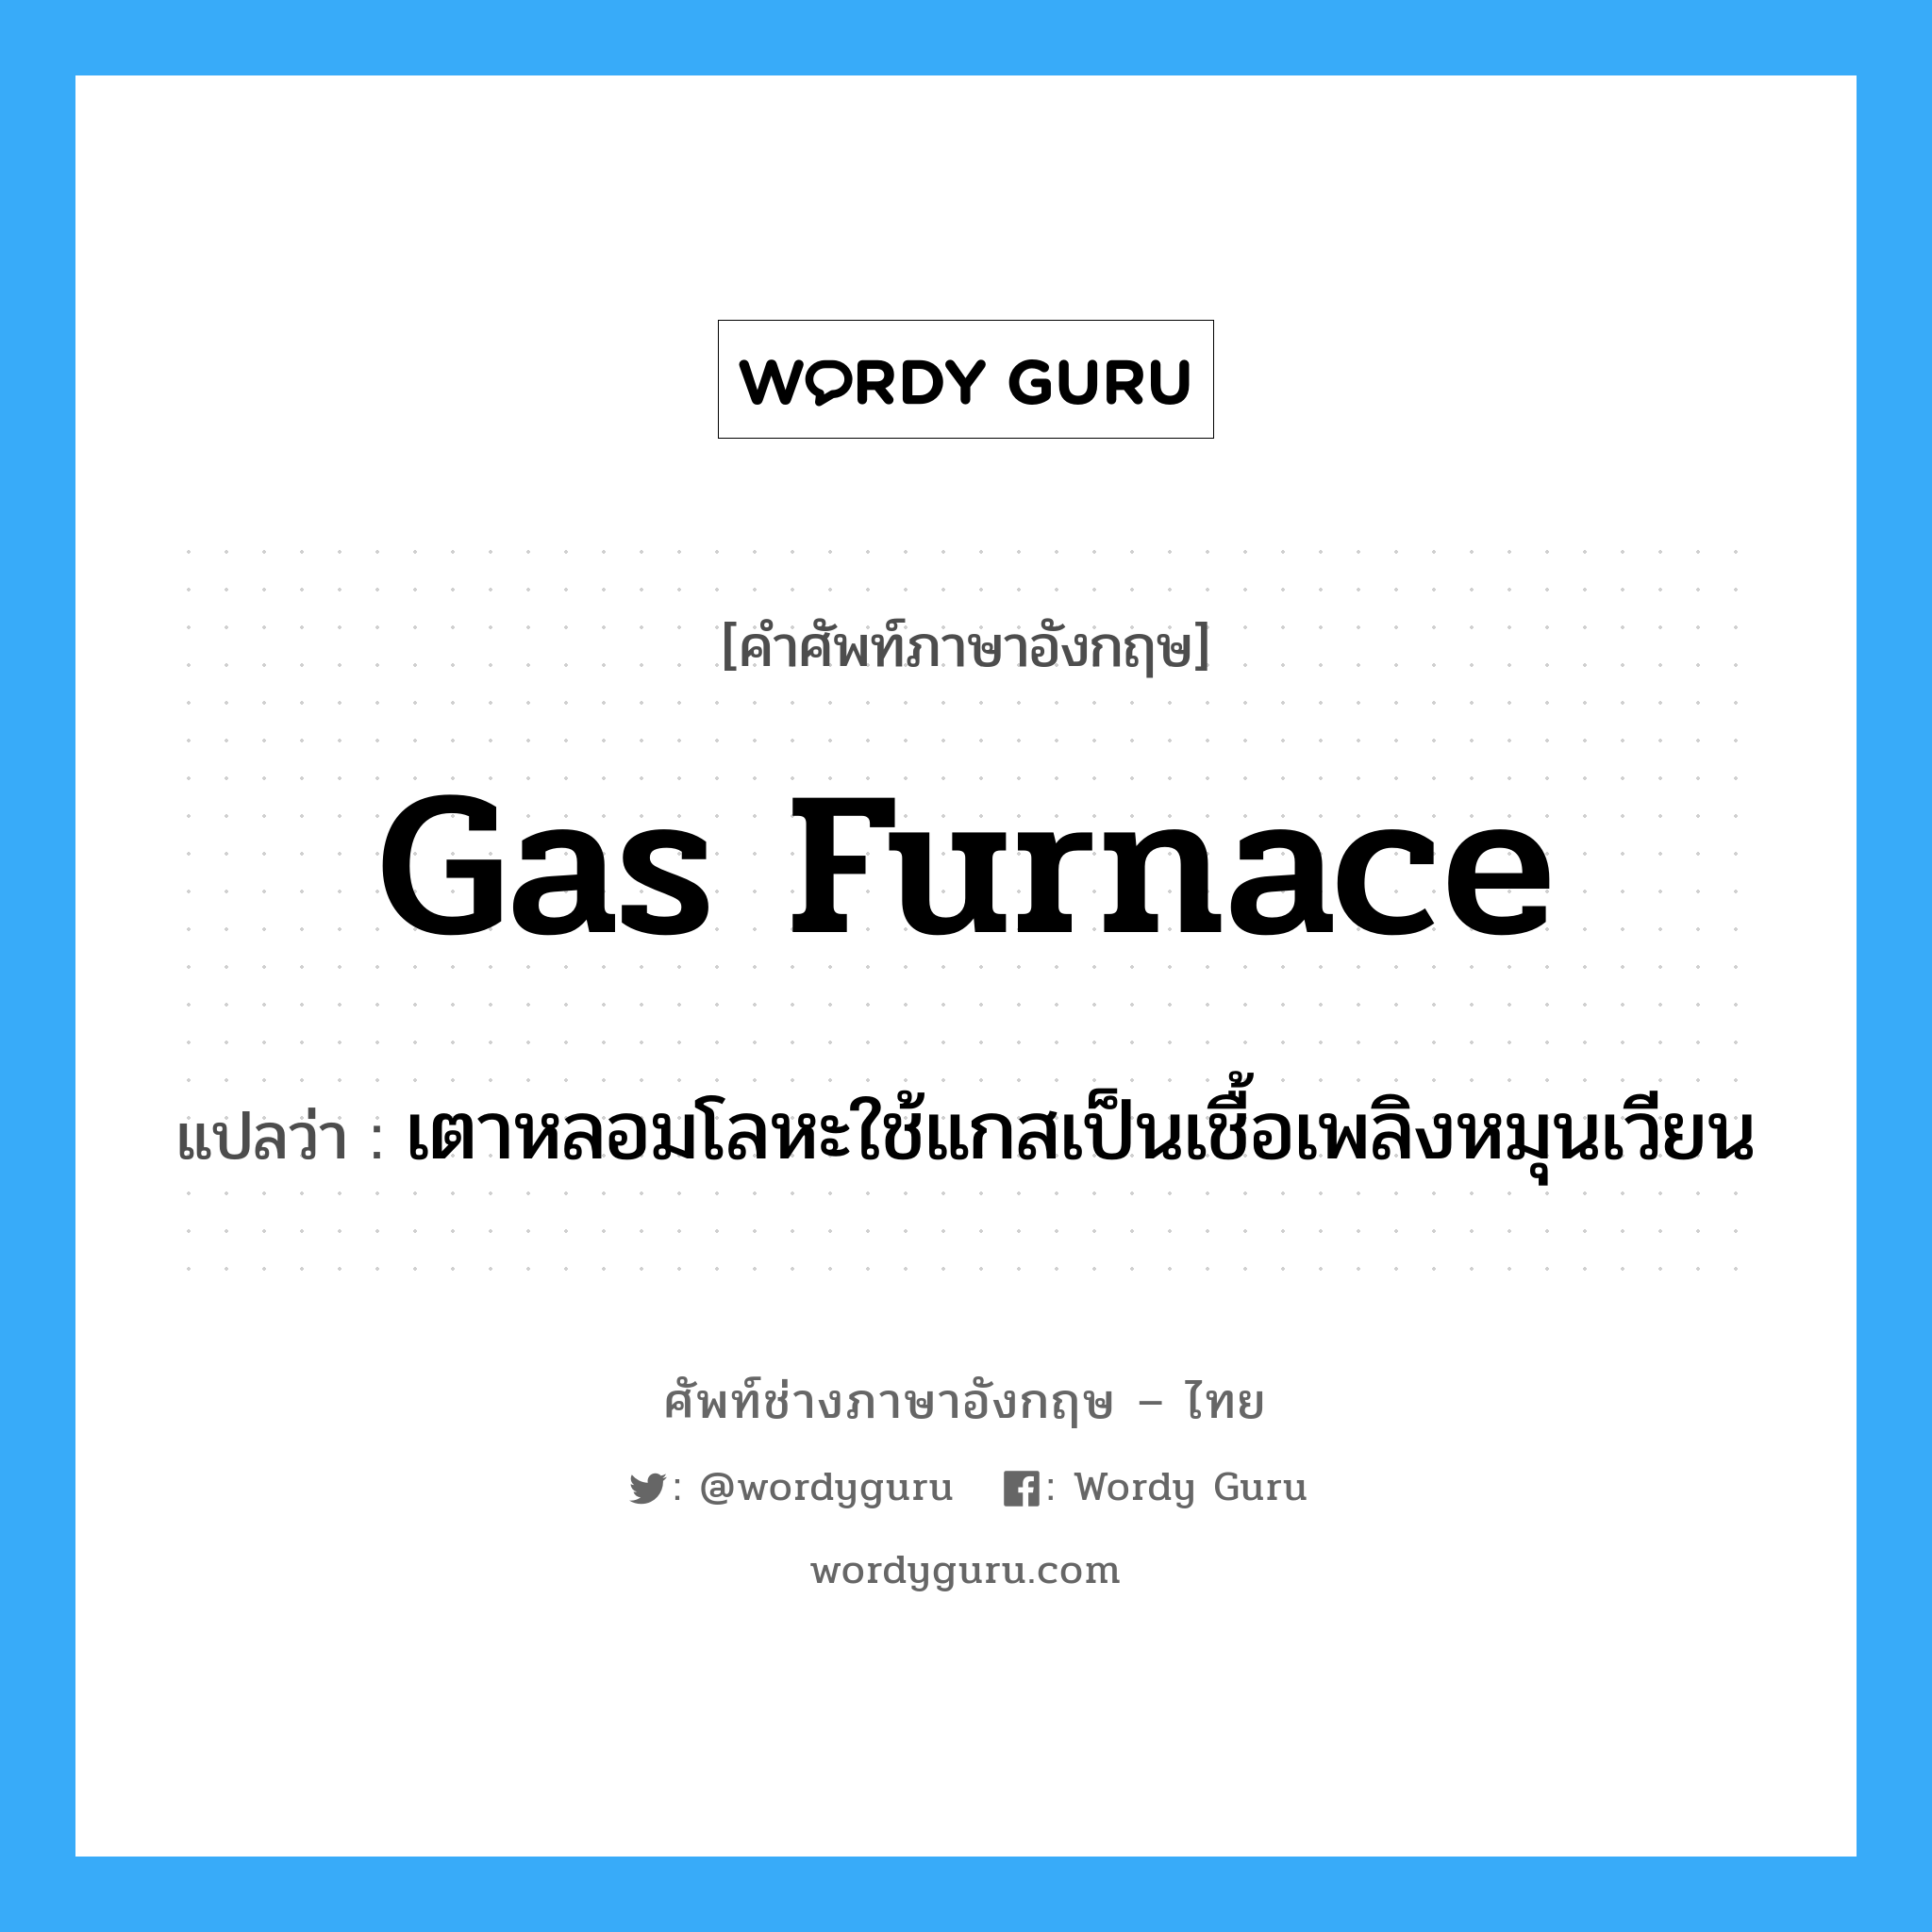 gas furnace แปลว่า?, คำศัพท์ช่างภาษาอังกฤษ - ไทย gas furnace คำศัพท์ภาษาอังกฤษ gas furnace แปลว่า เตาหลอมโลหะใช้แกสเป็นเชื้อเพลิงหมุนเวียน